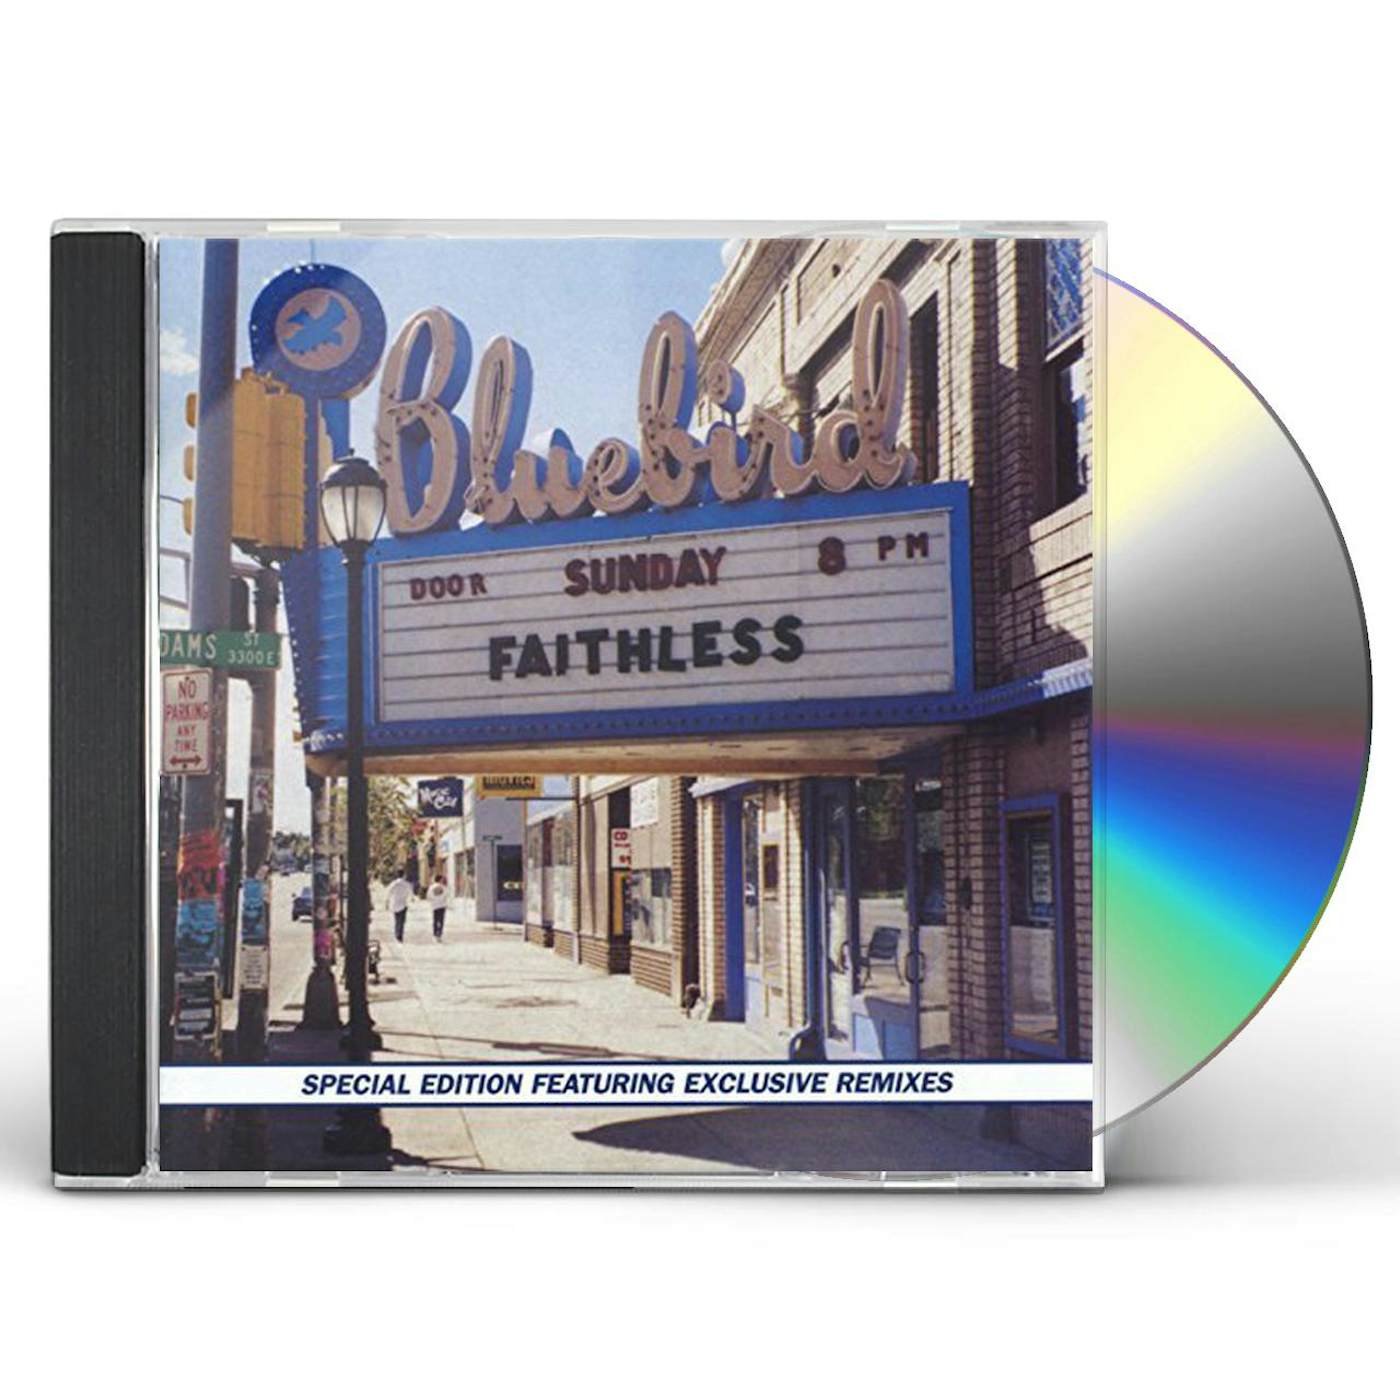 Faithless SUNDAY 8PM CD